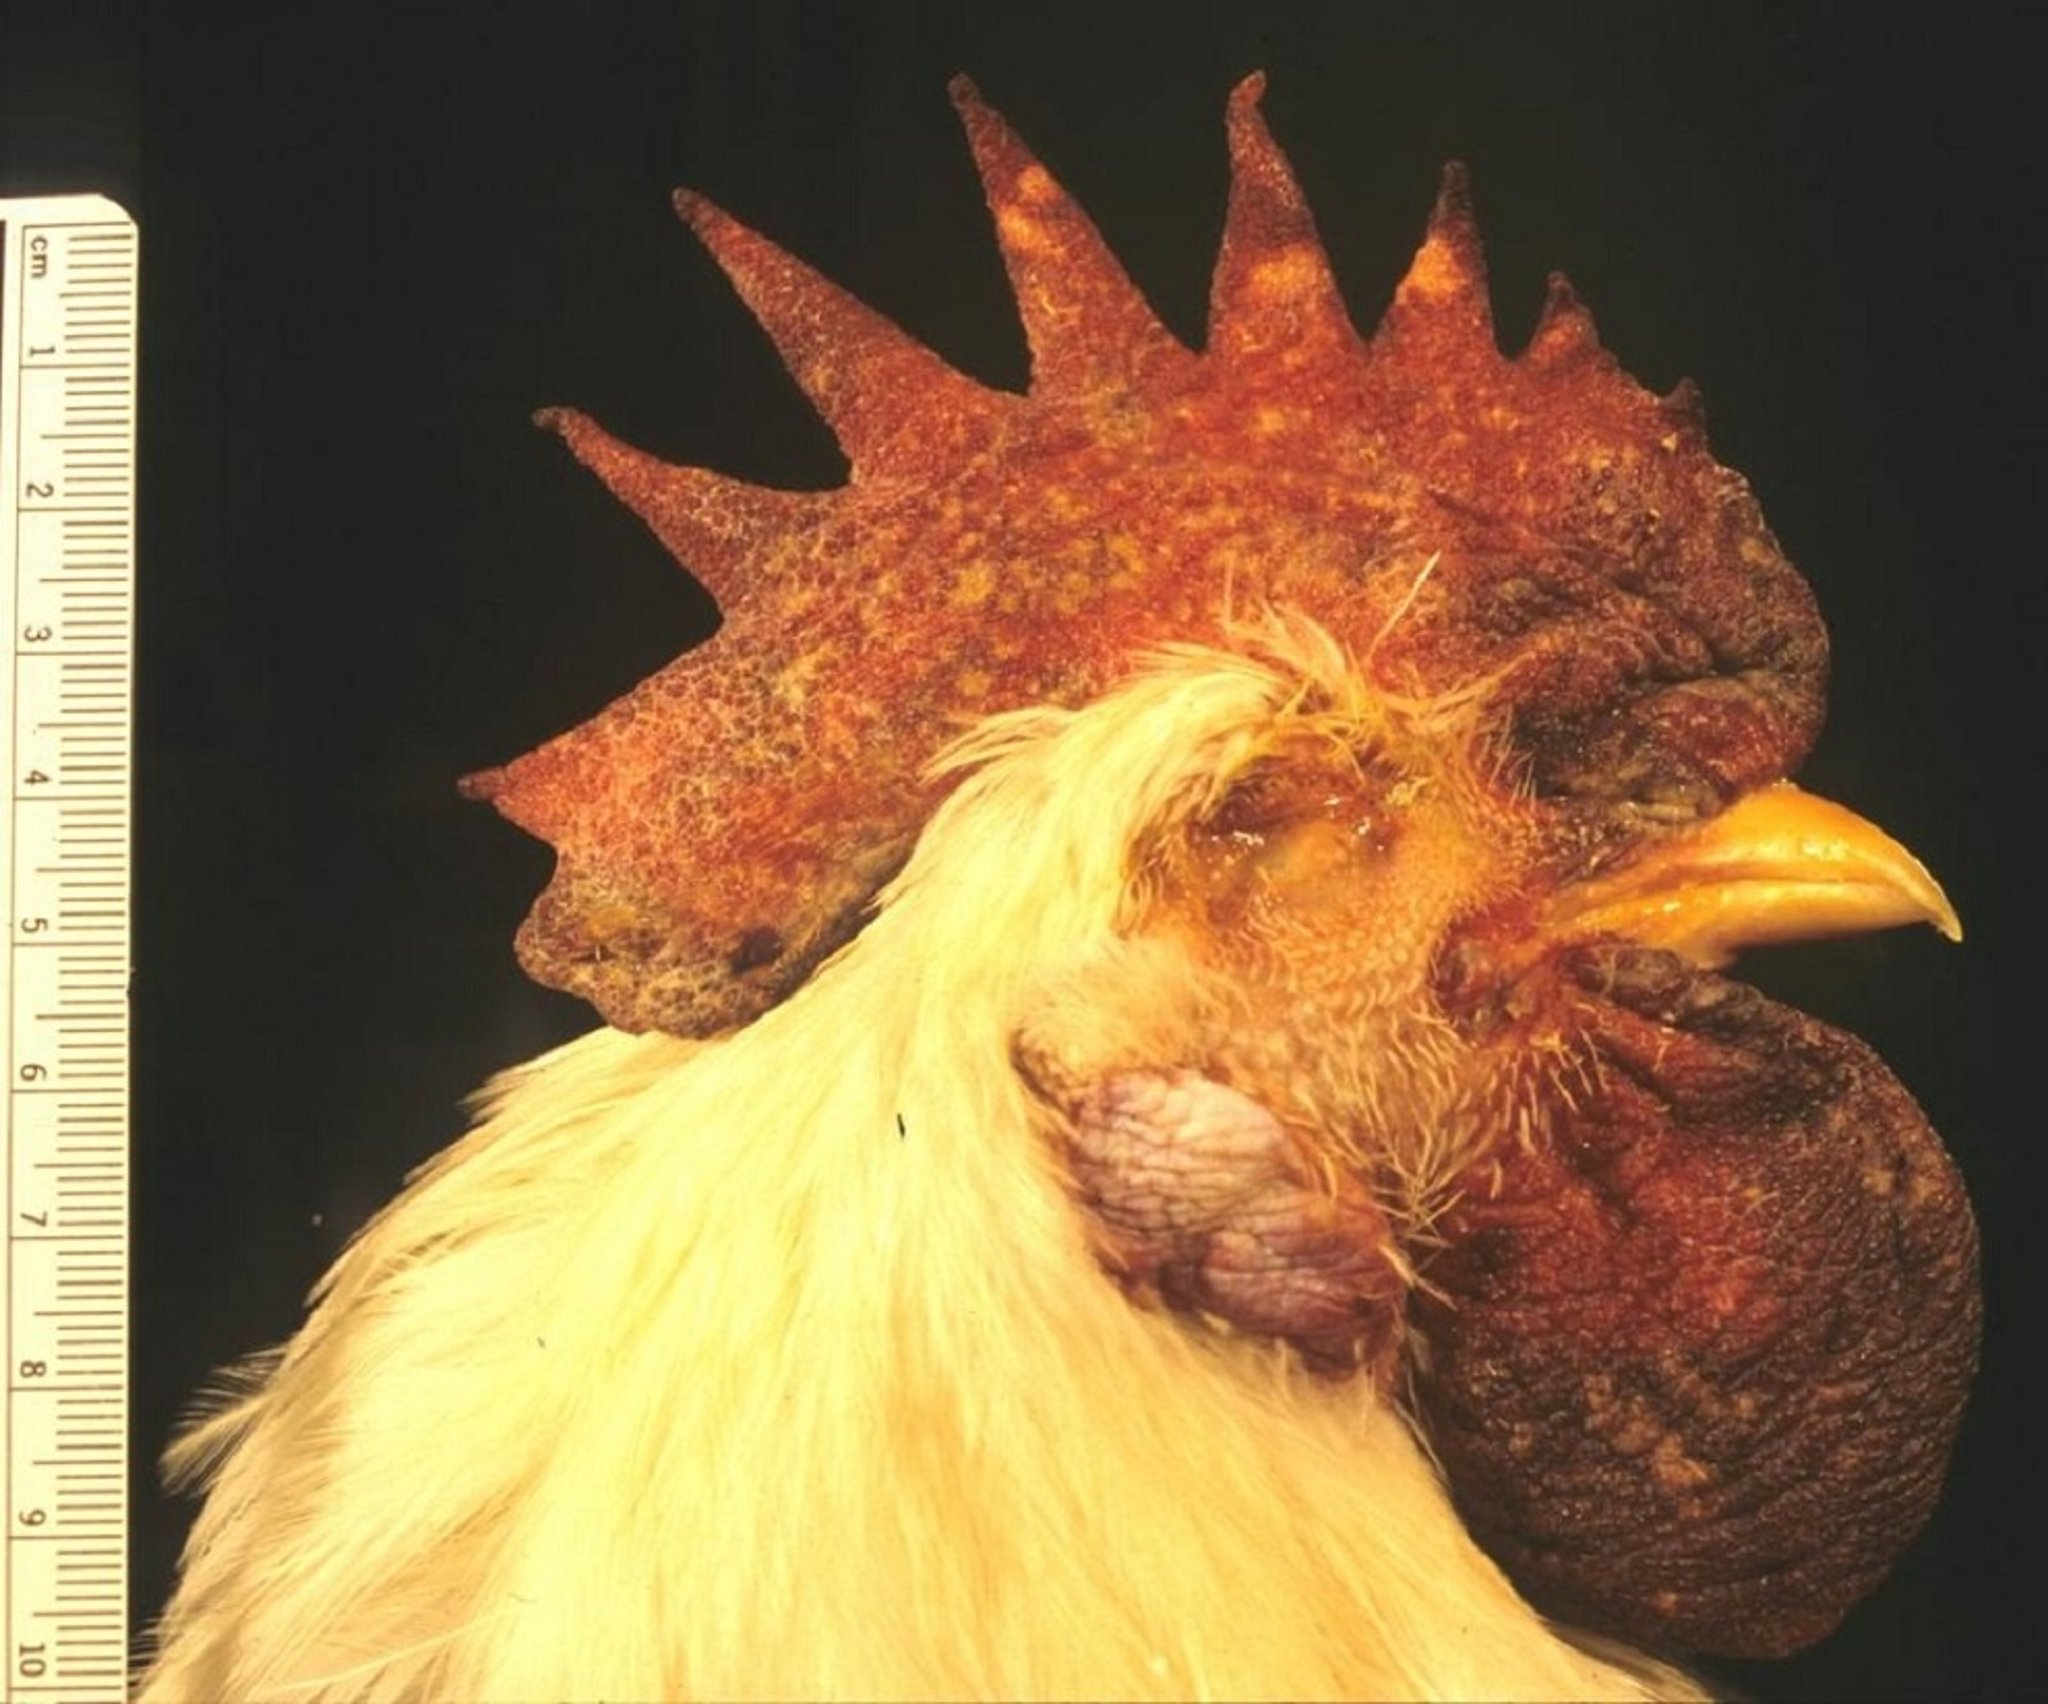 Avian influenza, ischemic necrosis of comb and wattles, chicken